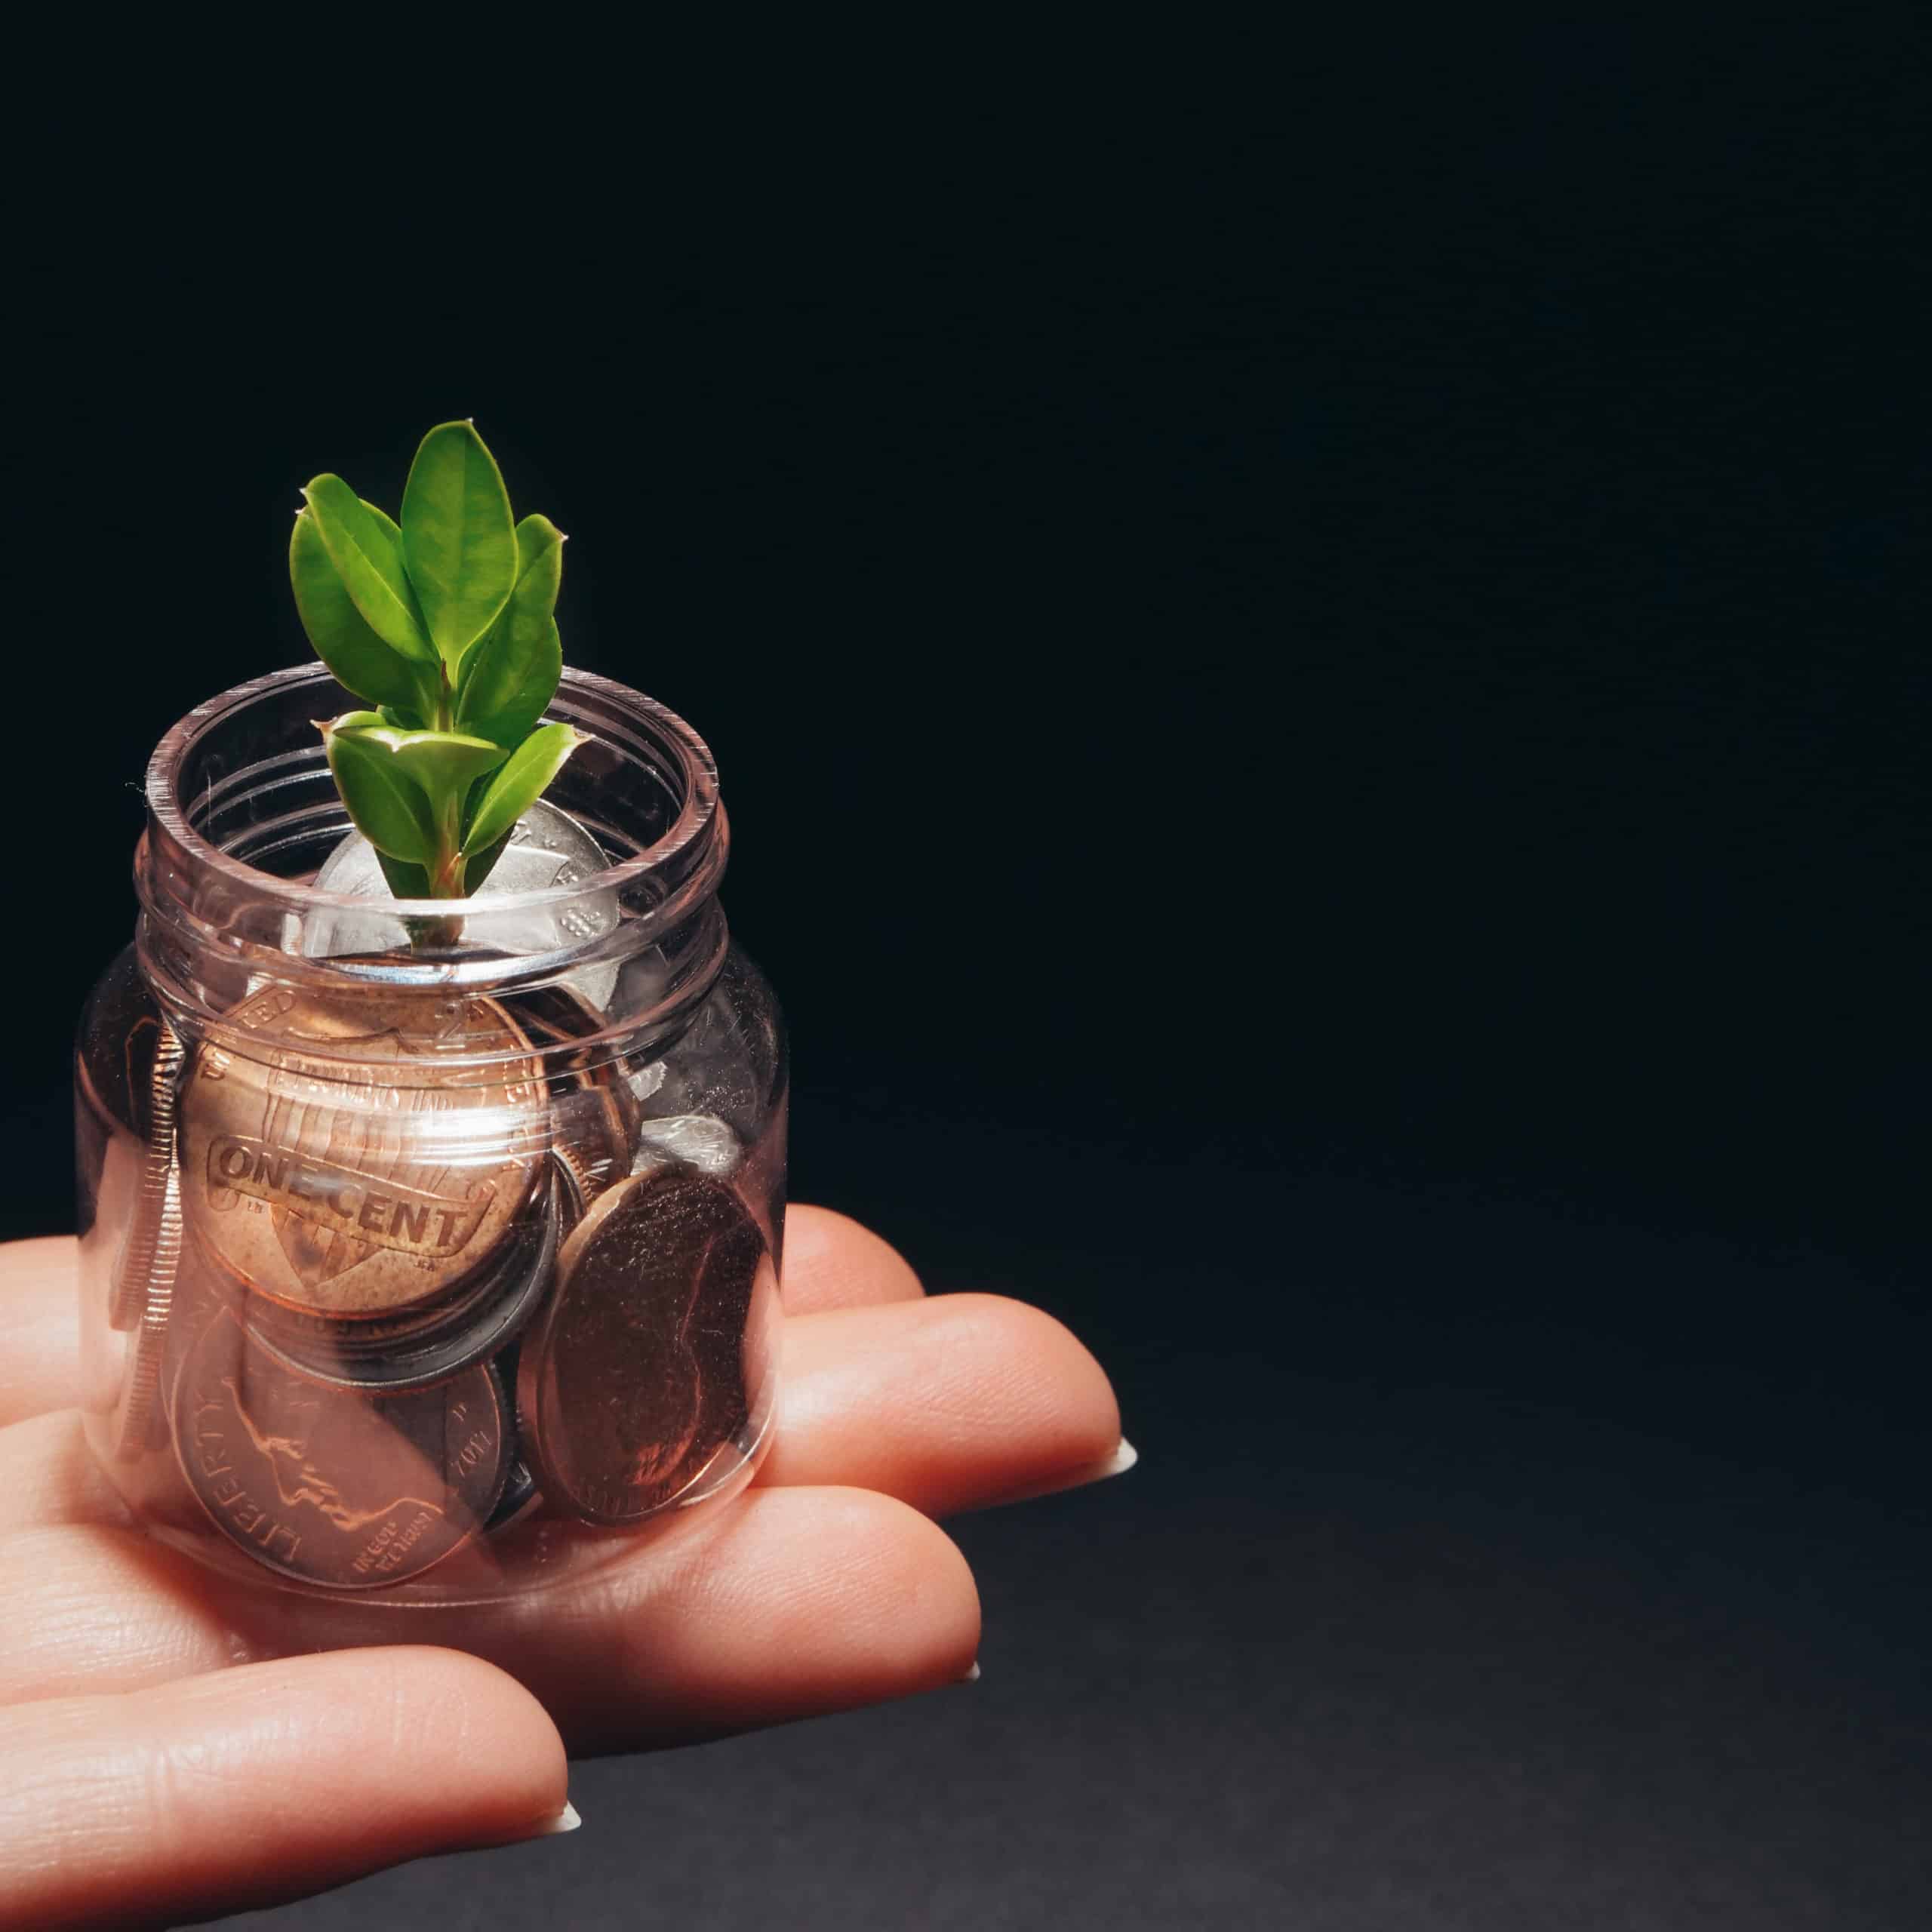 Une plante qui pousse dans de petites pièces de monnaie, dans un bocal de verre, porté par une main sur fond noir.